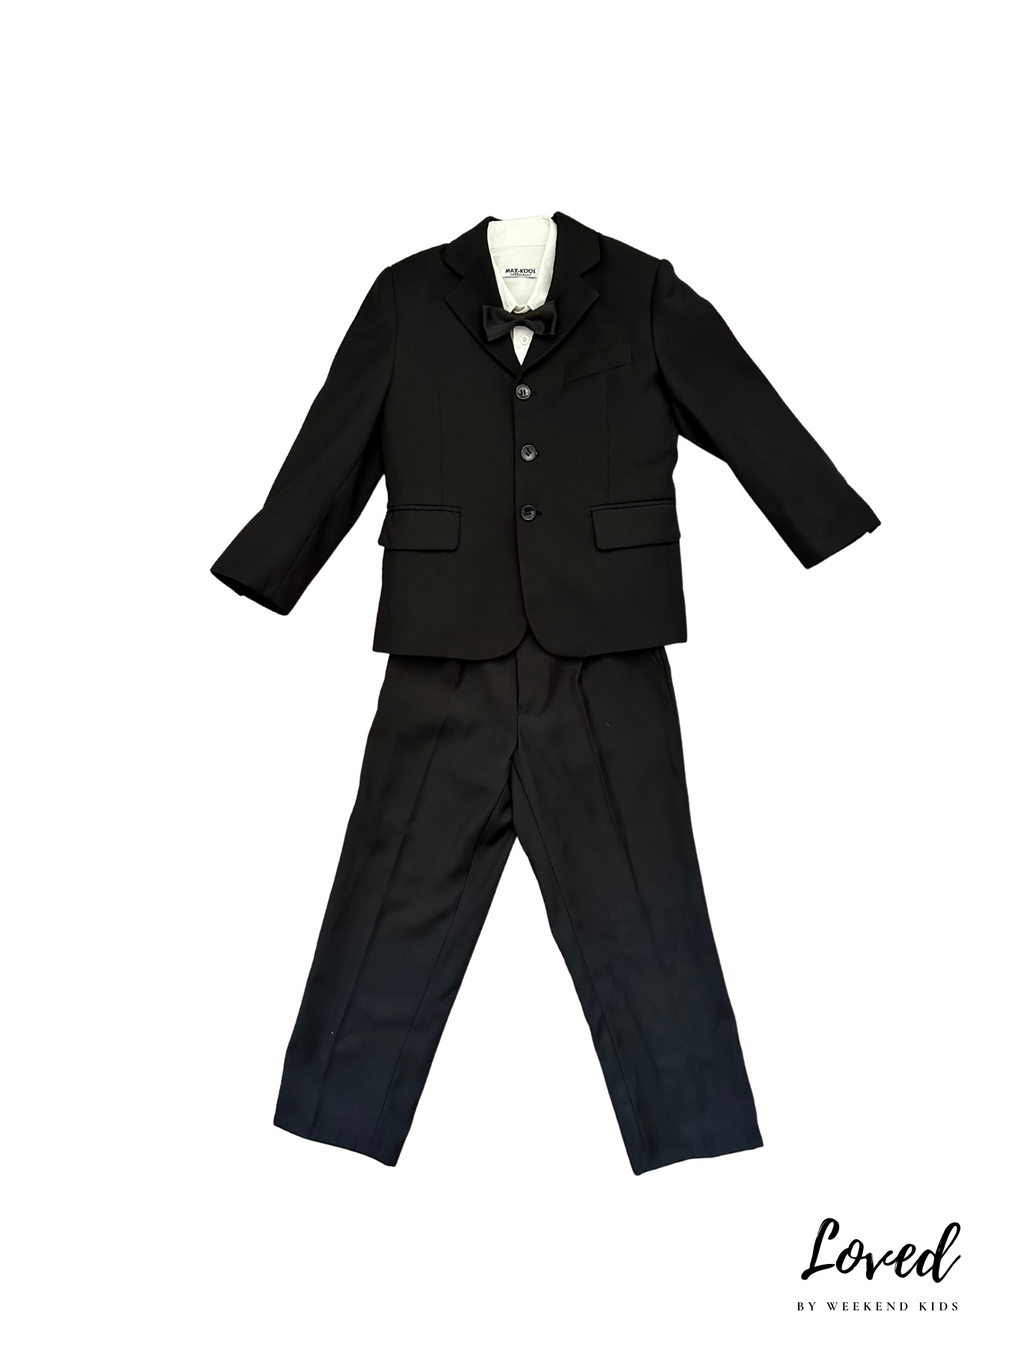 Kent Black Blazer Vest Suit Set (Loved)